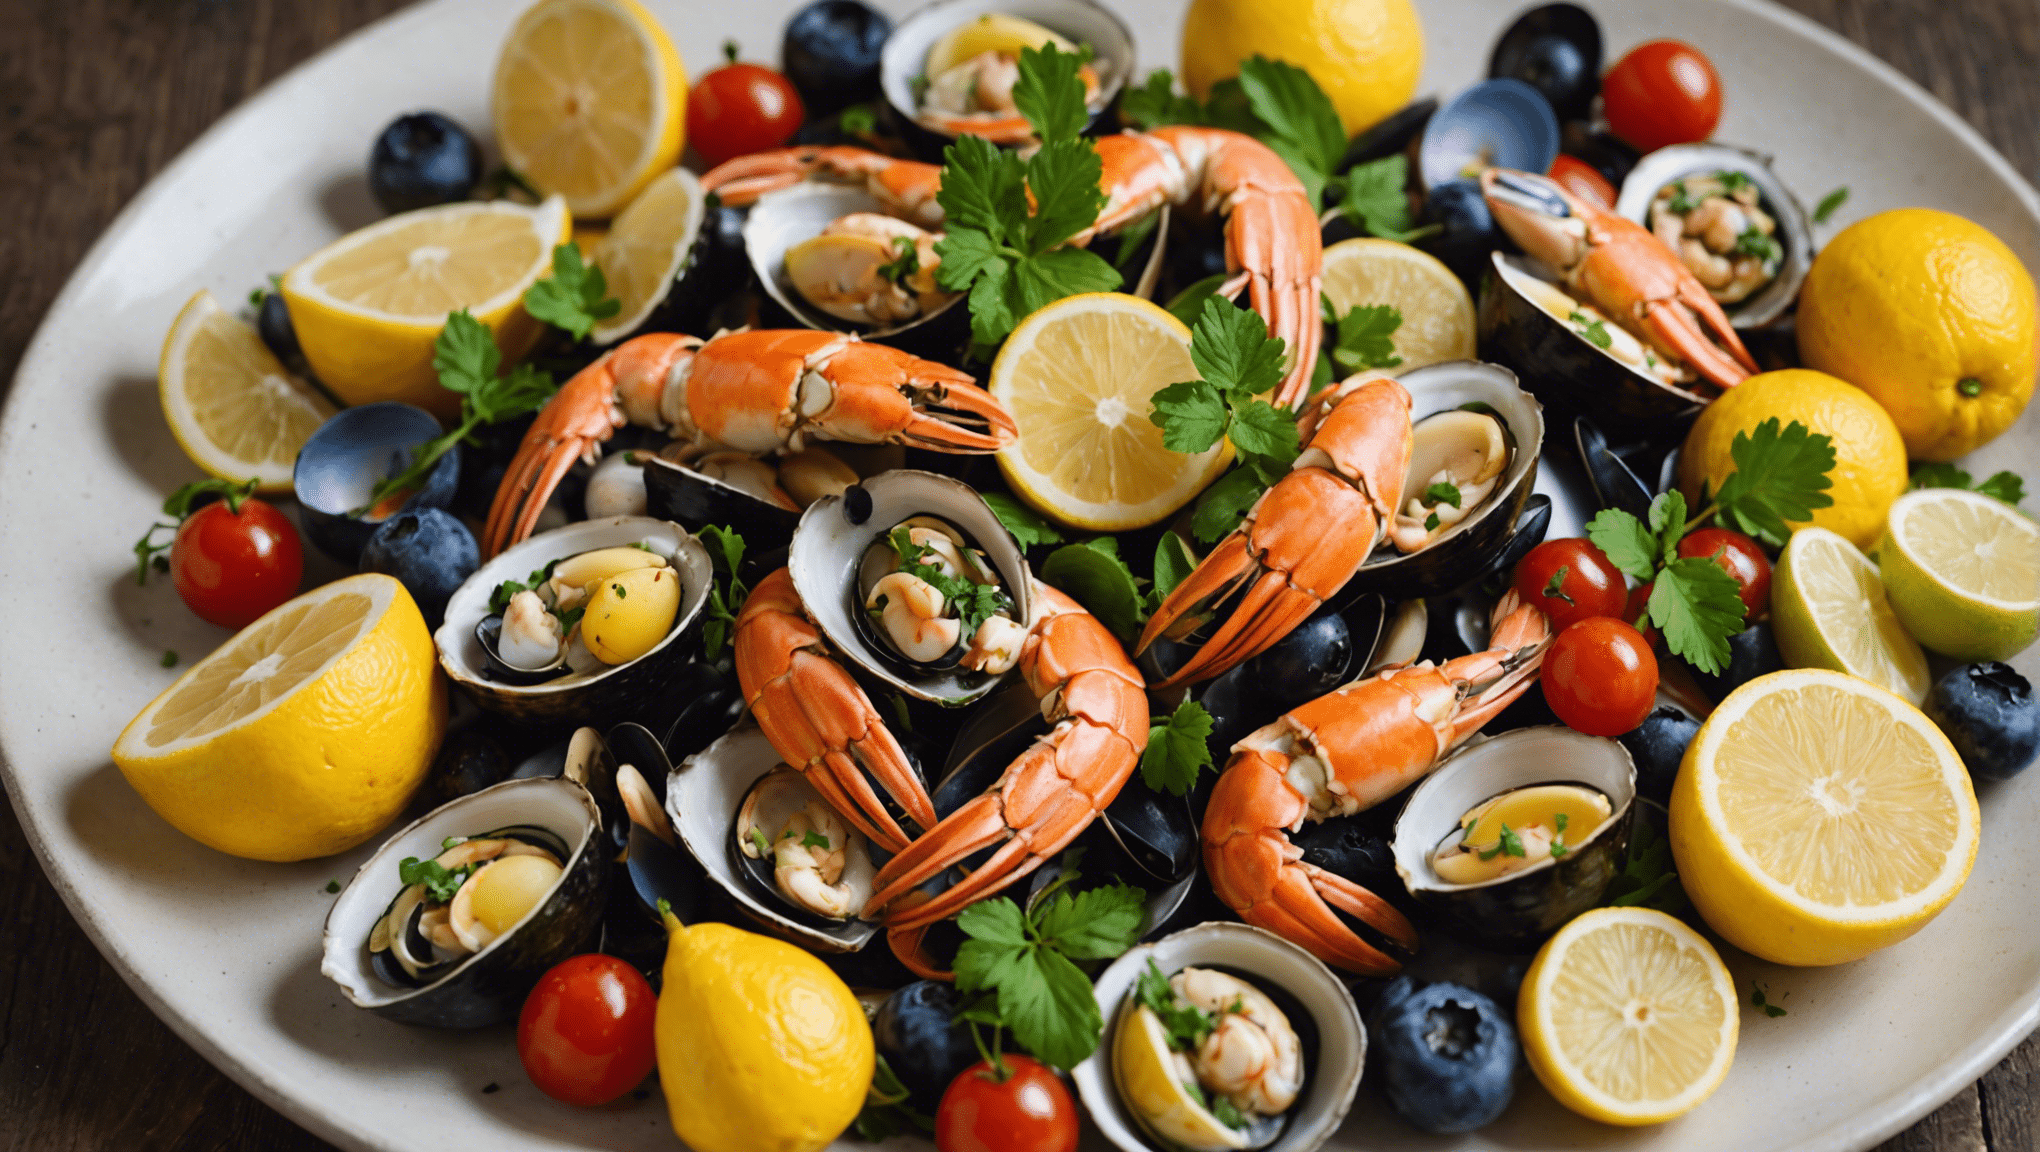 découvrez des recettes savoureuses pour ravir les amateurs de fruits de mer avec des ingrédients frais et des saveurs exquises.